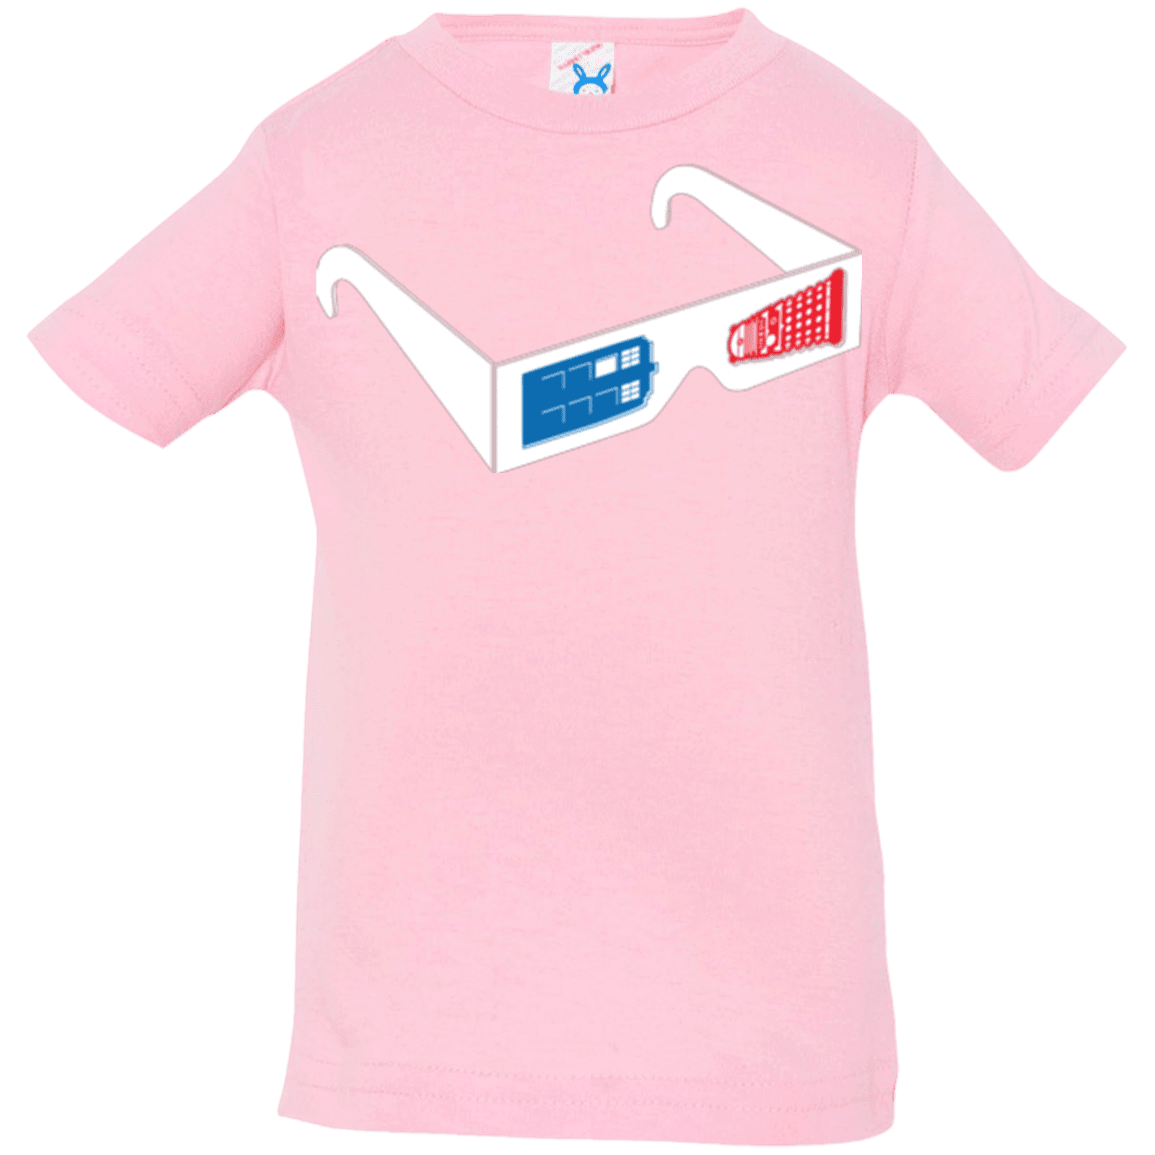 T-Shirts Pink / 6 Months 3DW Infant Premium T-Shirt